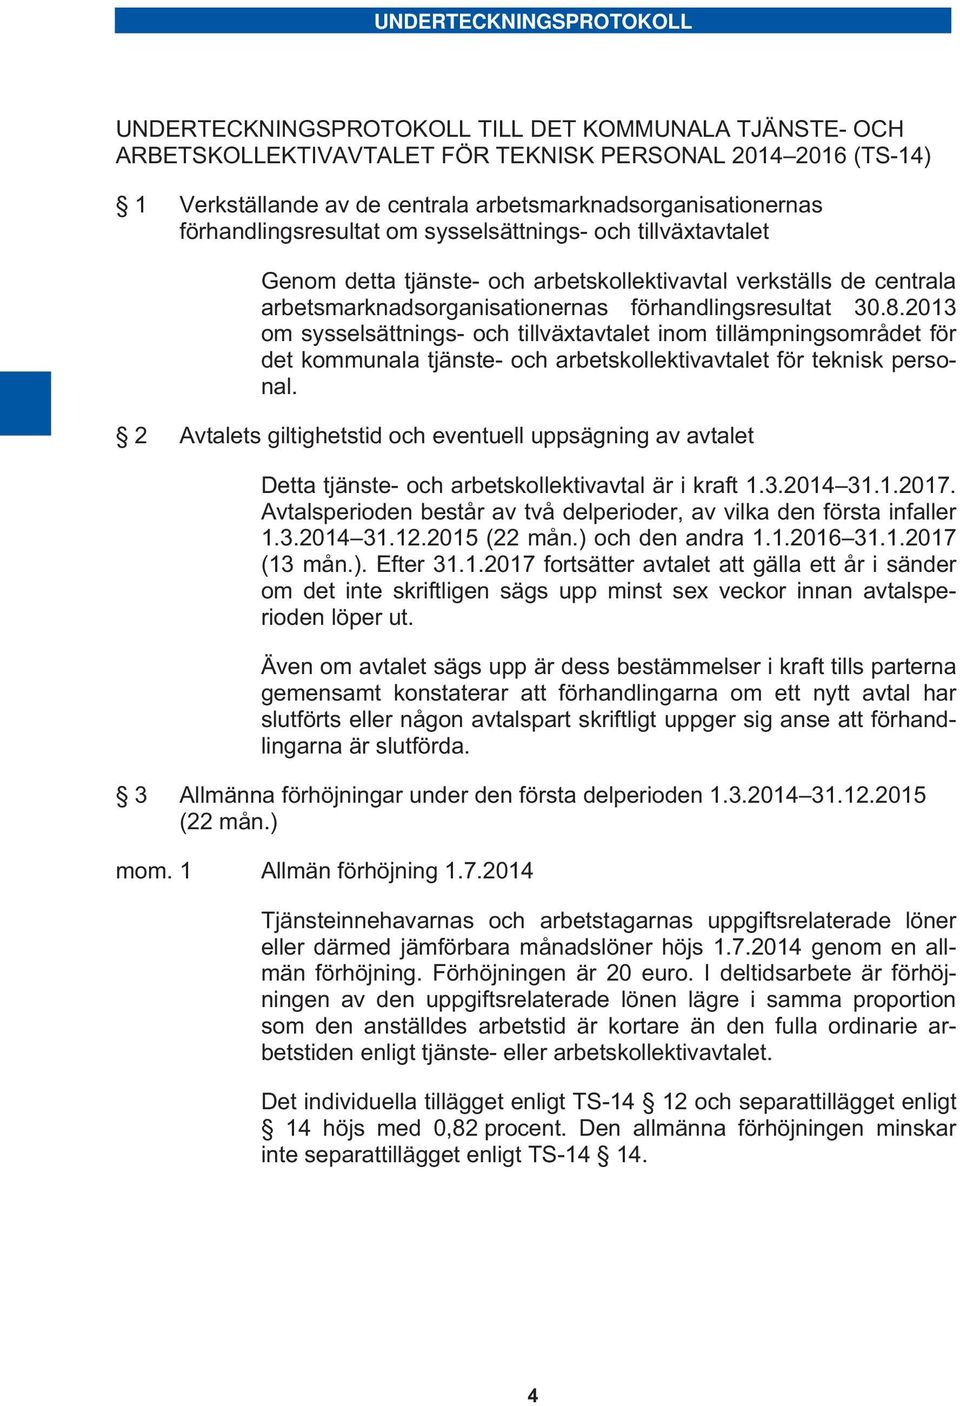 förhandlingsresultat 30.8.2013 om sysselsättnings- och tillväxtavtalet inom tillämpningsområdet för det kommunala tjänste- och arbetskollektivavtalet för teknisk personal.